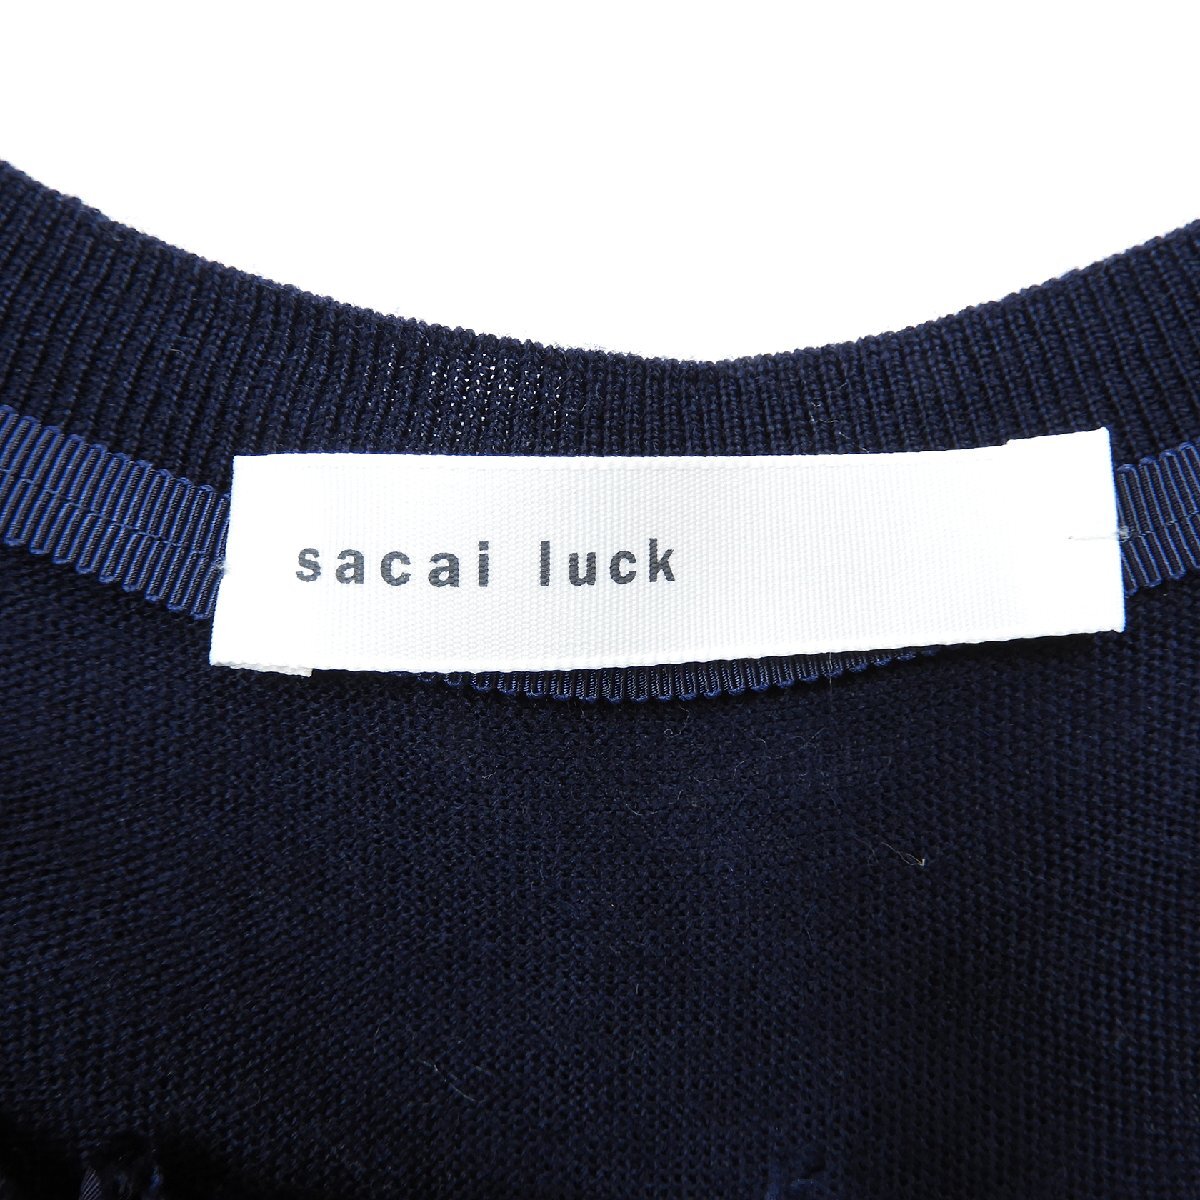 sacai luck サカイ ラック カーディガン ネイビー size 2 #17540 レディース ウール きれいめ カジュアルの画像3